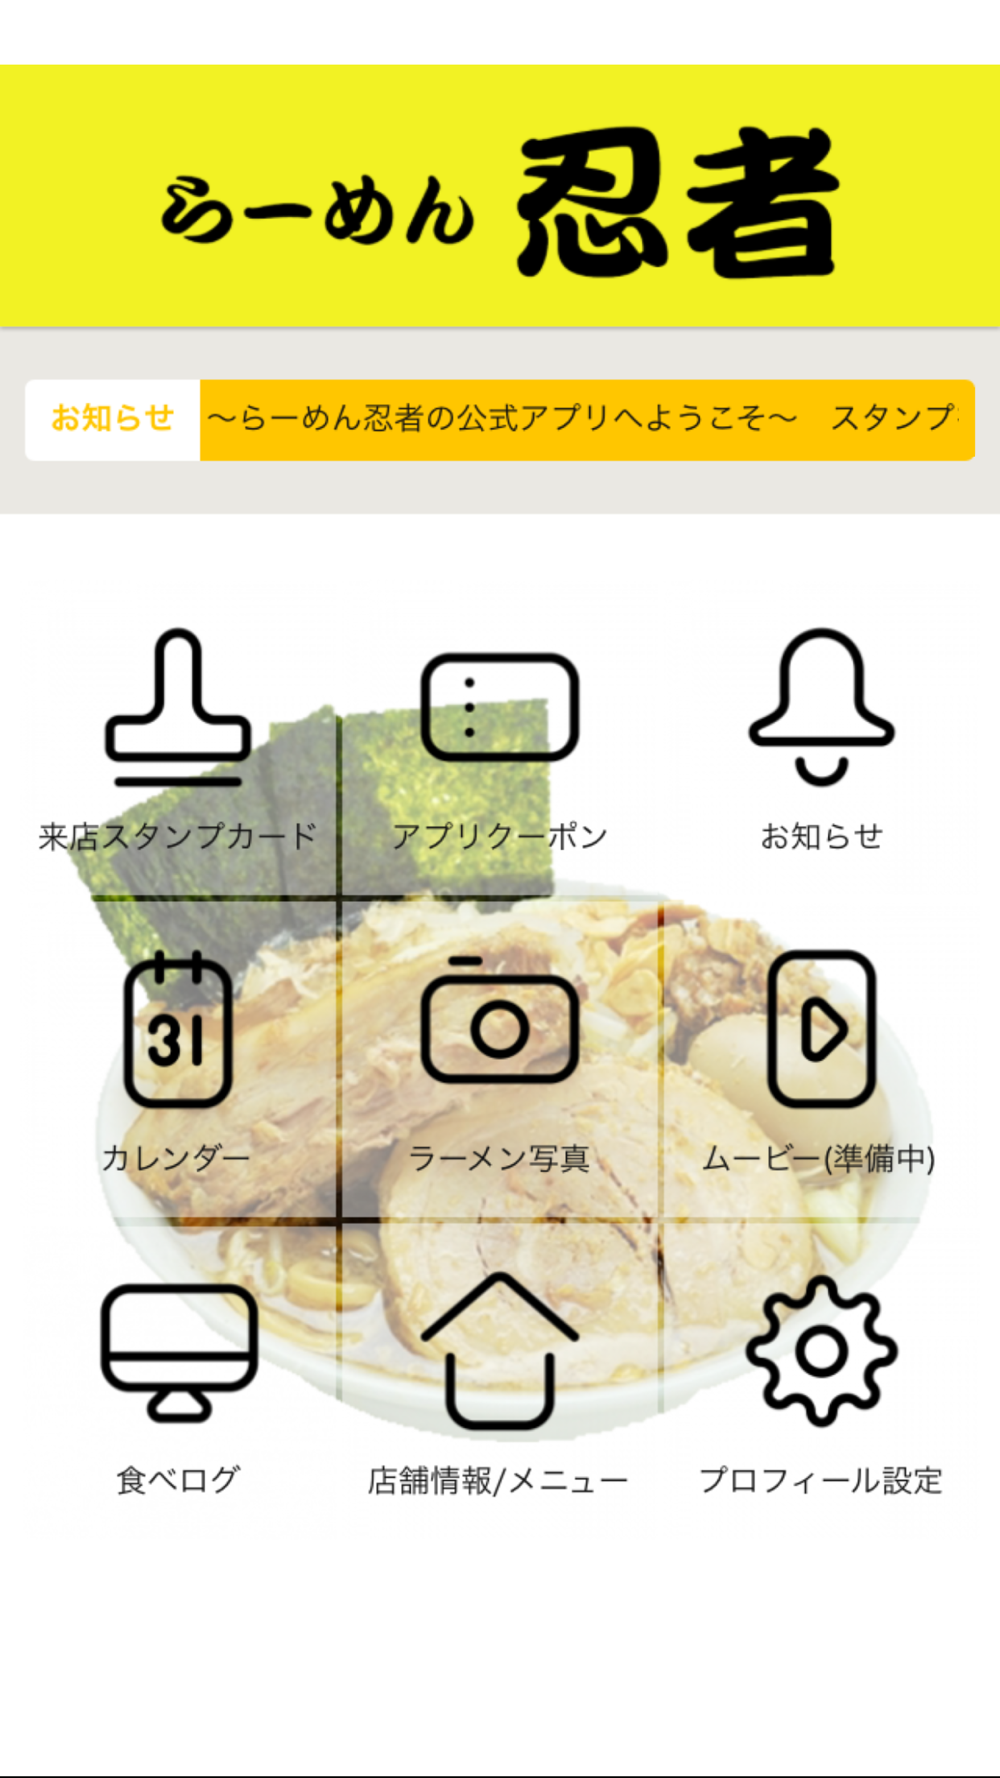 らーめん忍者 らーめんにんじゃ ラーメンニンジャ Free Download App For Iphone Steprimo Com